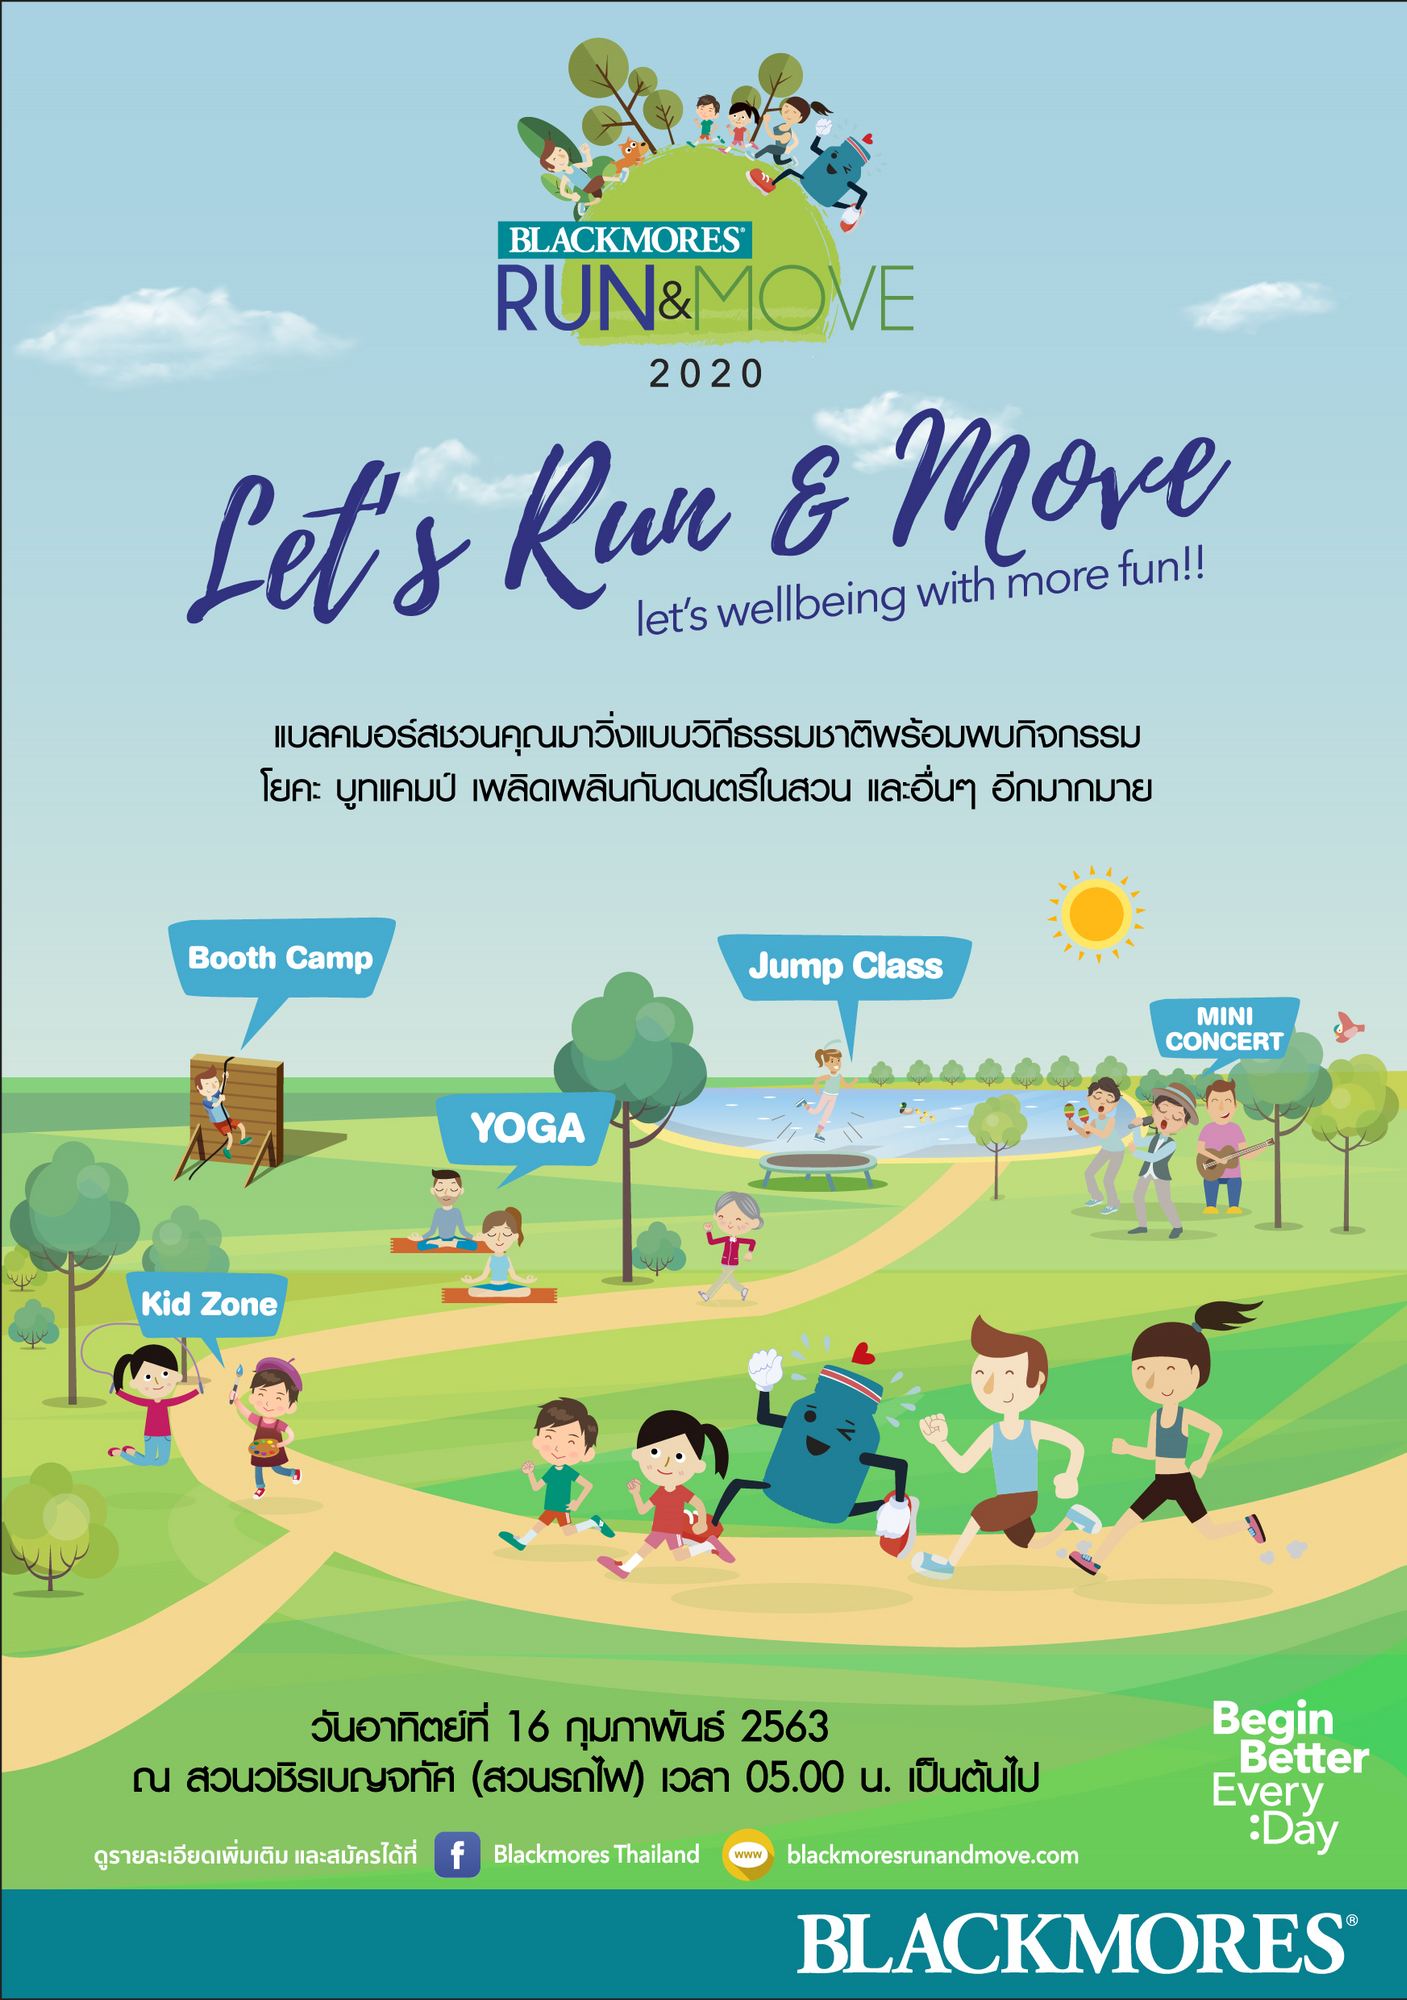 Blackmores Run & Move 2020 งานวิ่งที่ได้มากกว่าสุขภาพ